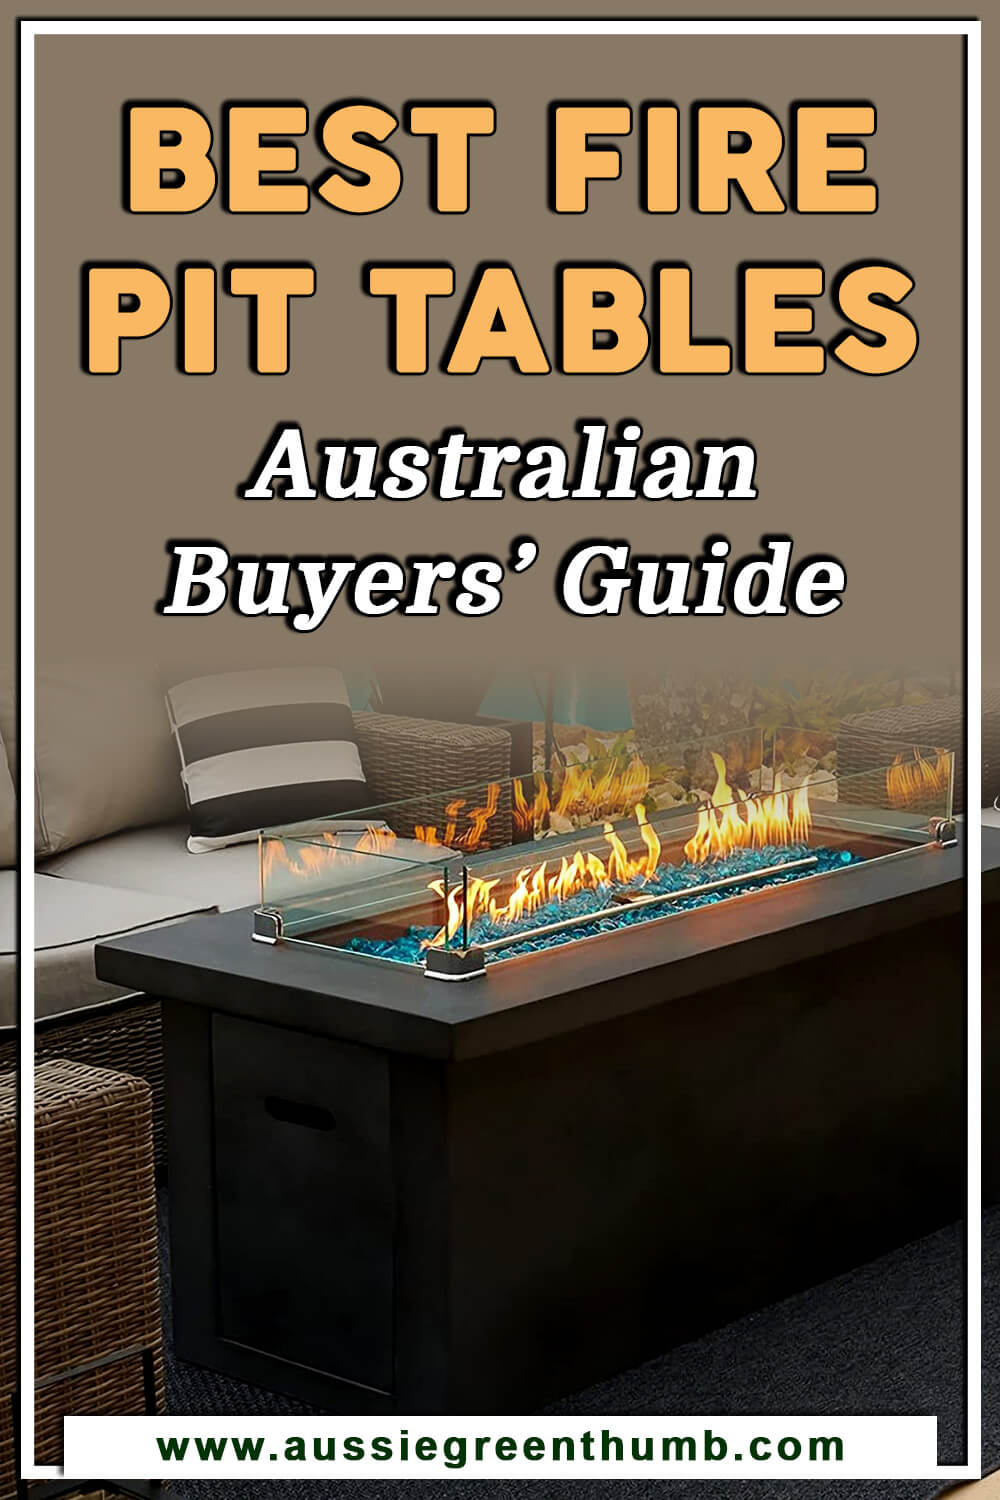 Best Fire Pit Tables Australian Buyers’ Guide